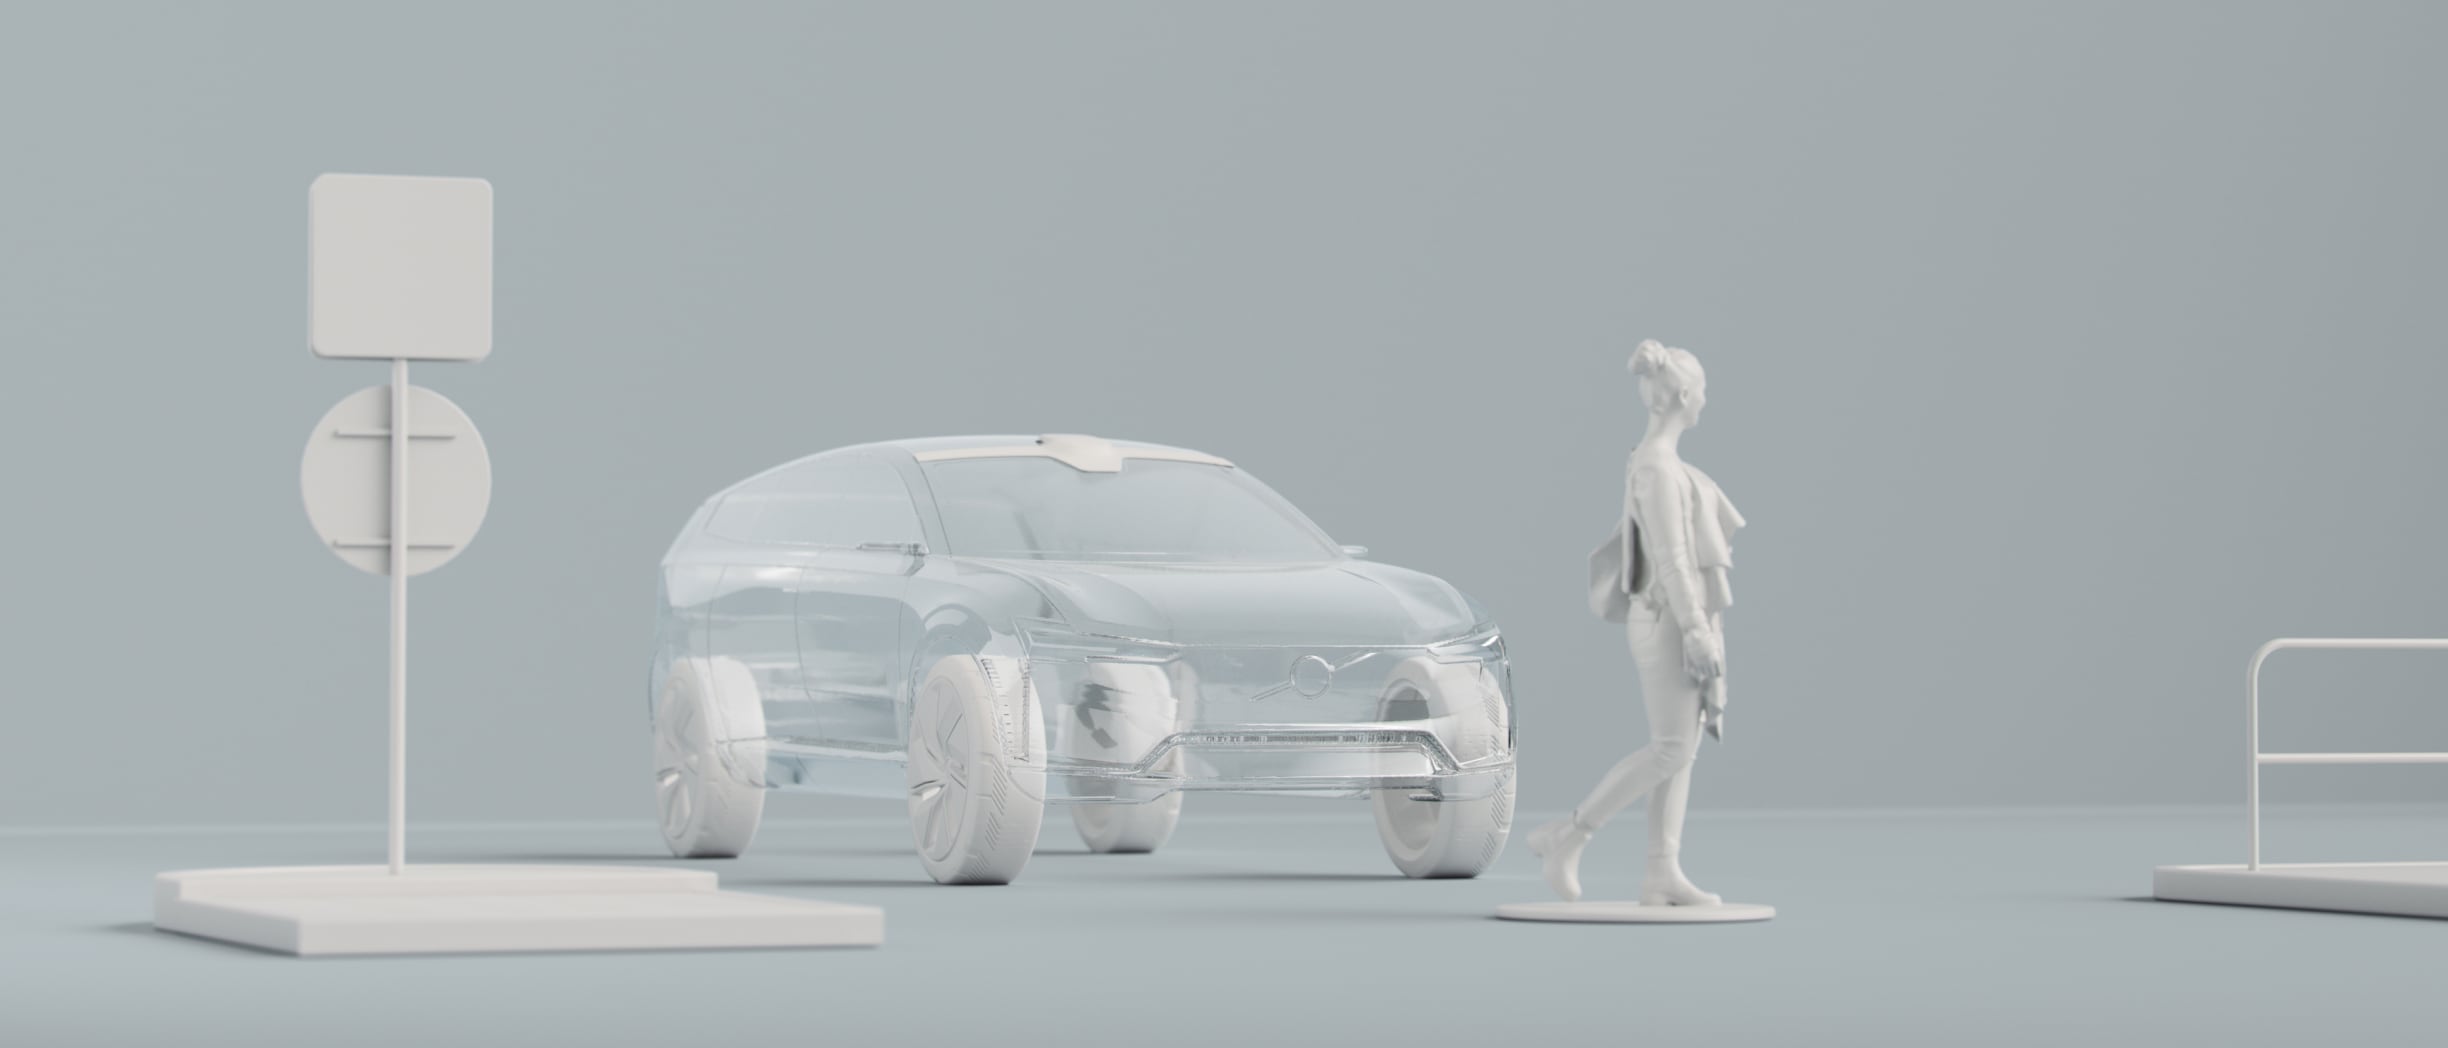 Representación digital del contorno de un automóvil, una persona y otros objetos.